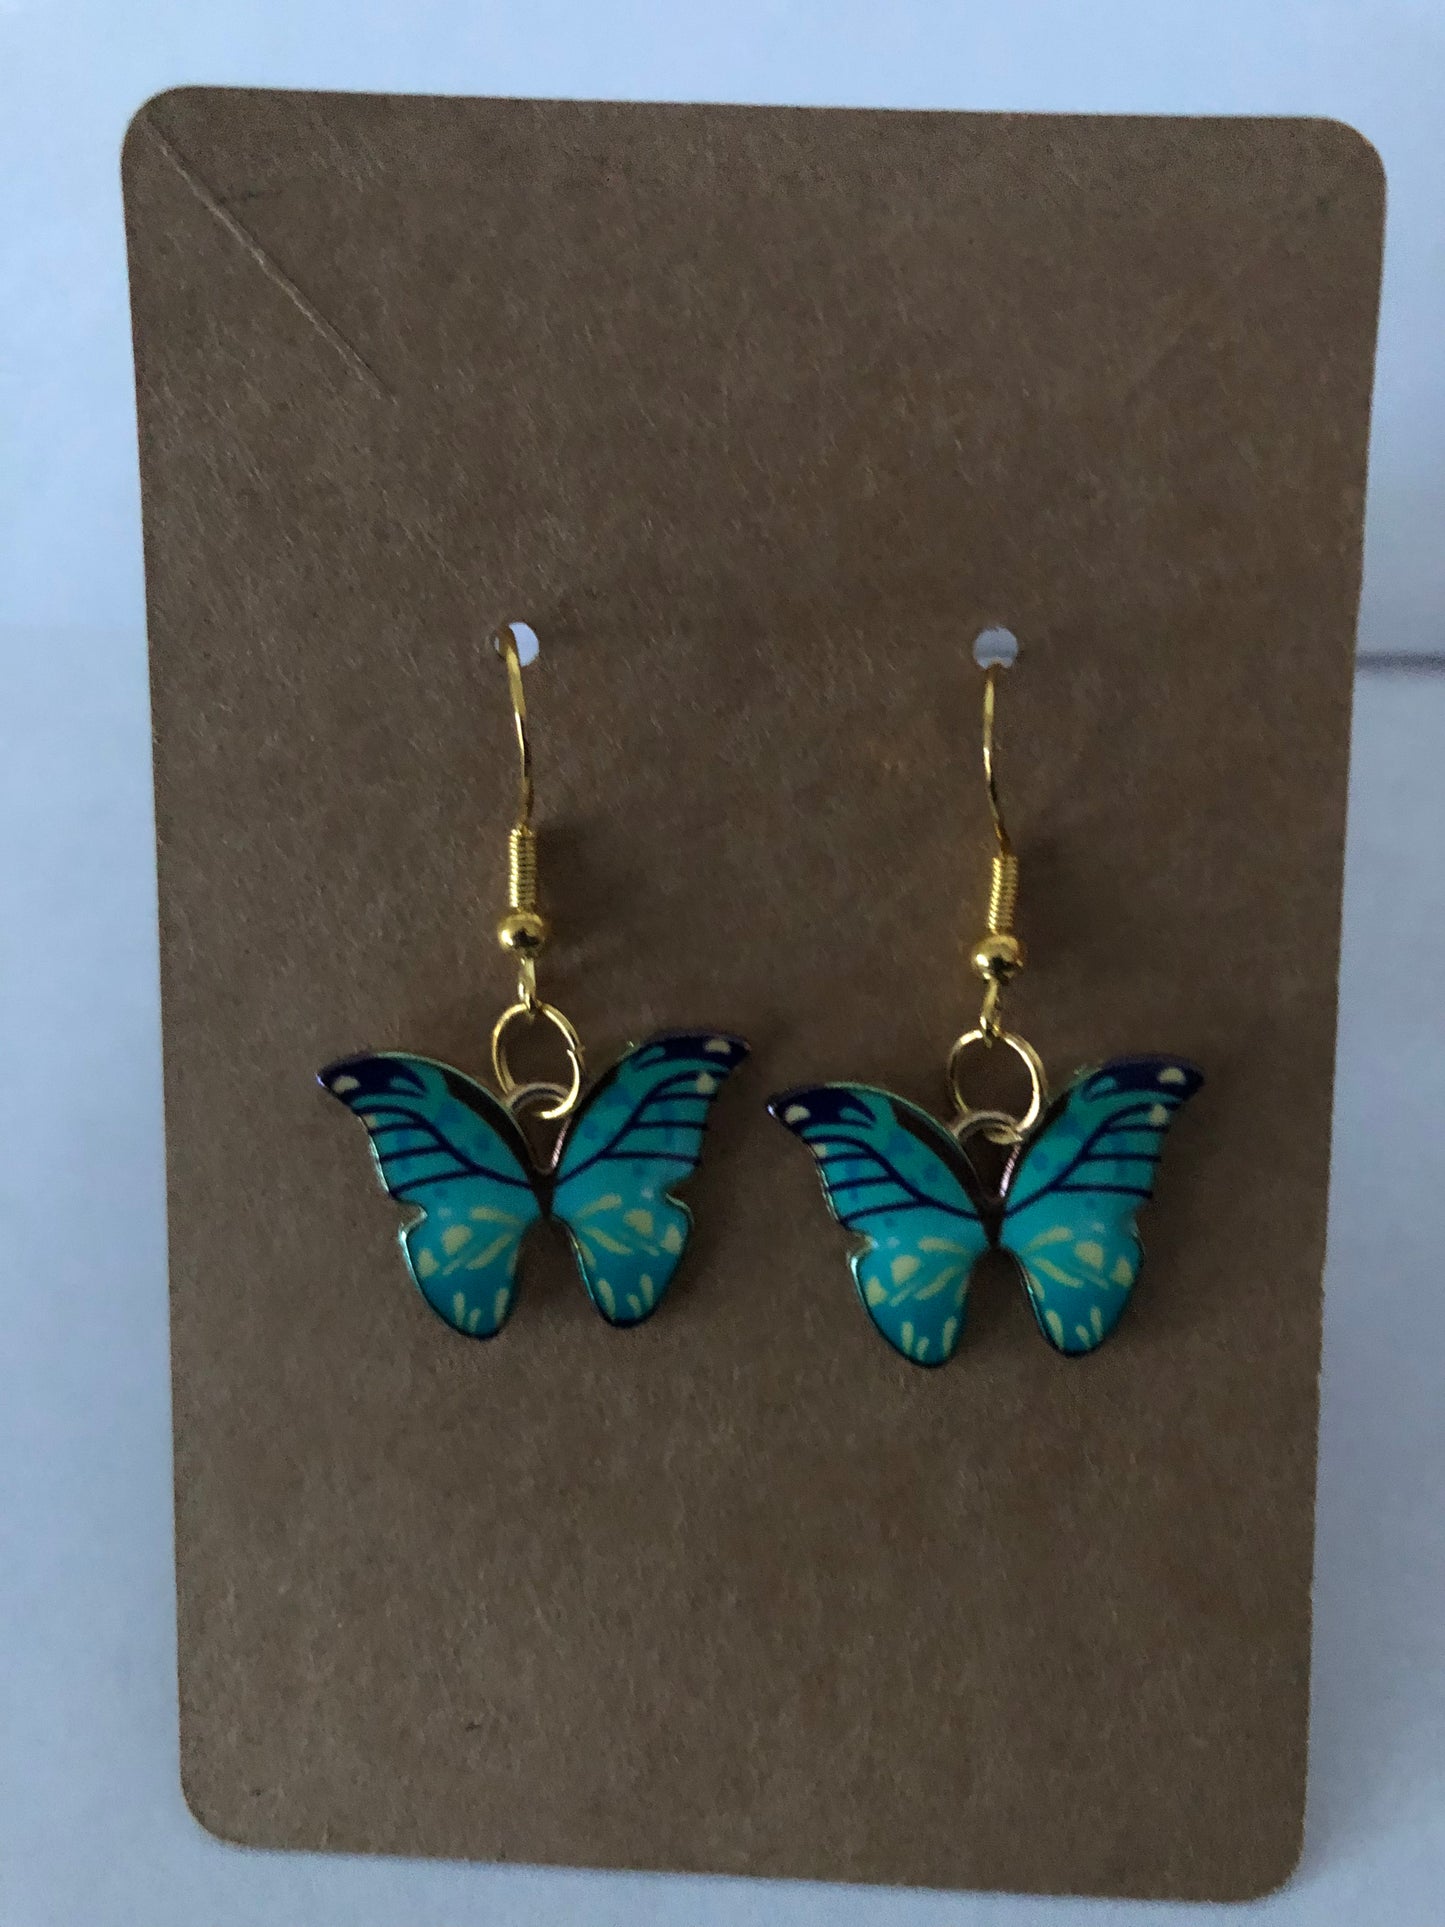 Butterfly jewelry set